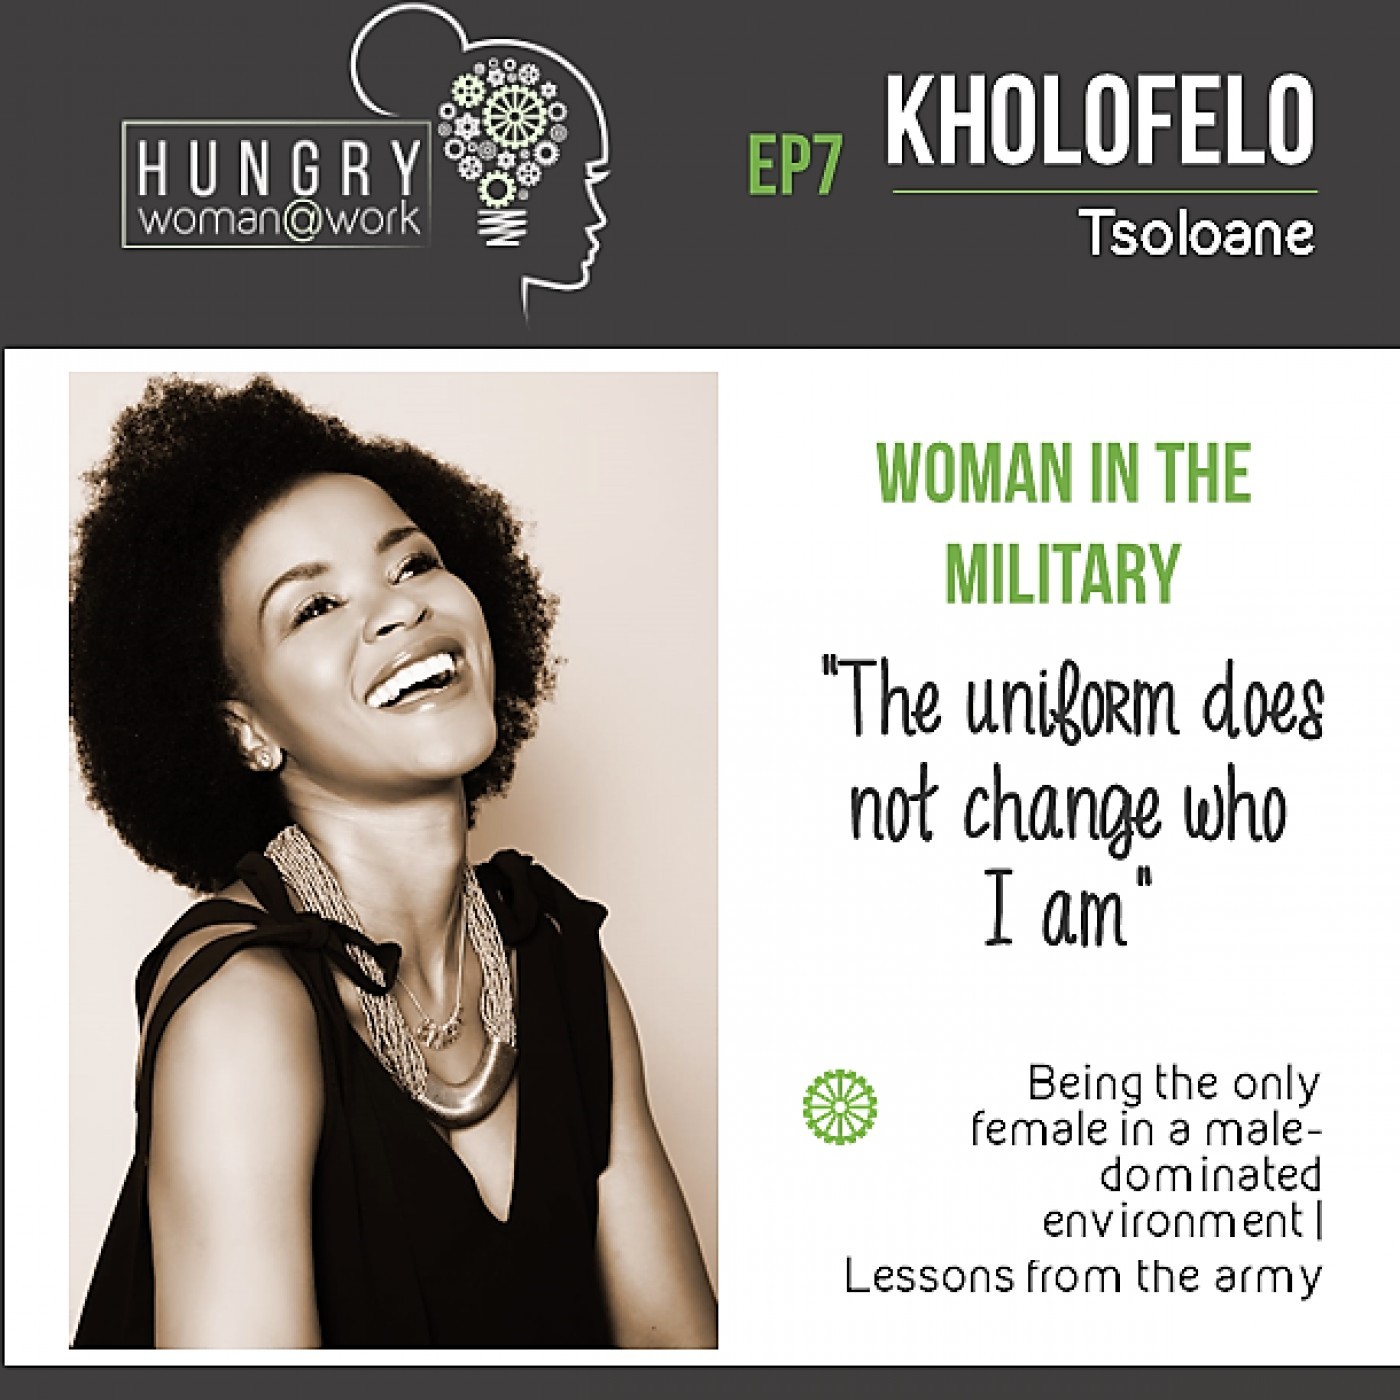 Ep 7: Kholofelo Tsoloane “The uniform does not change who I am”